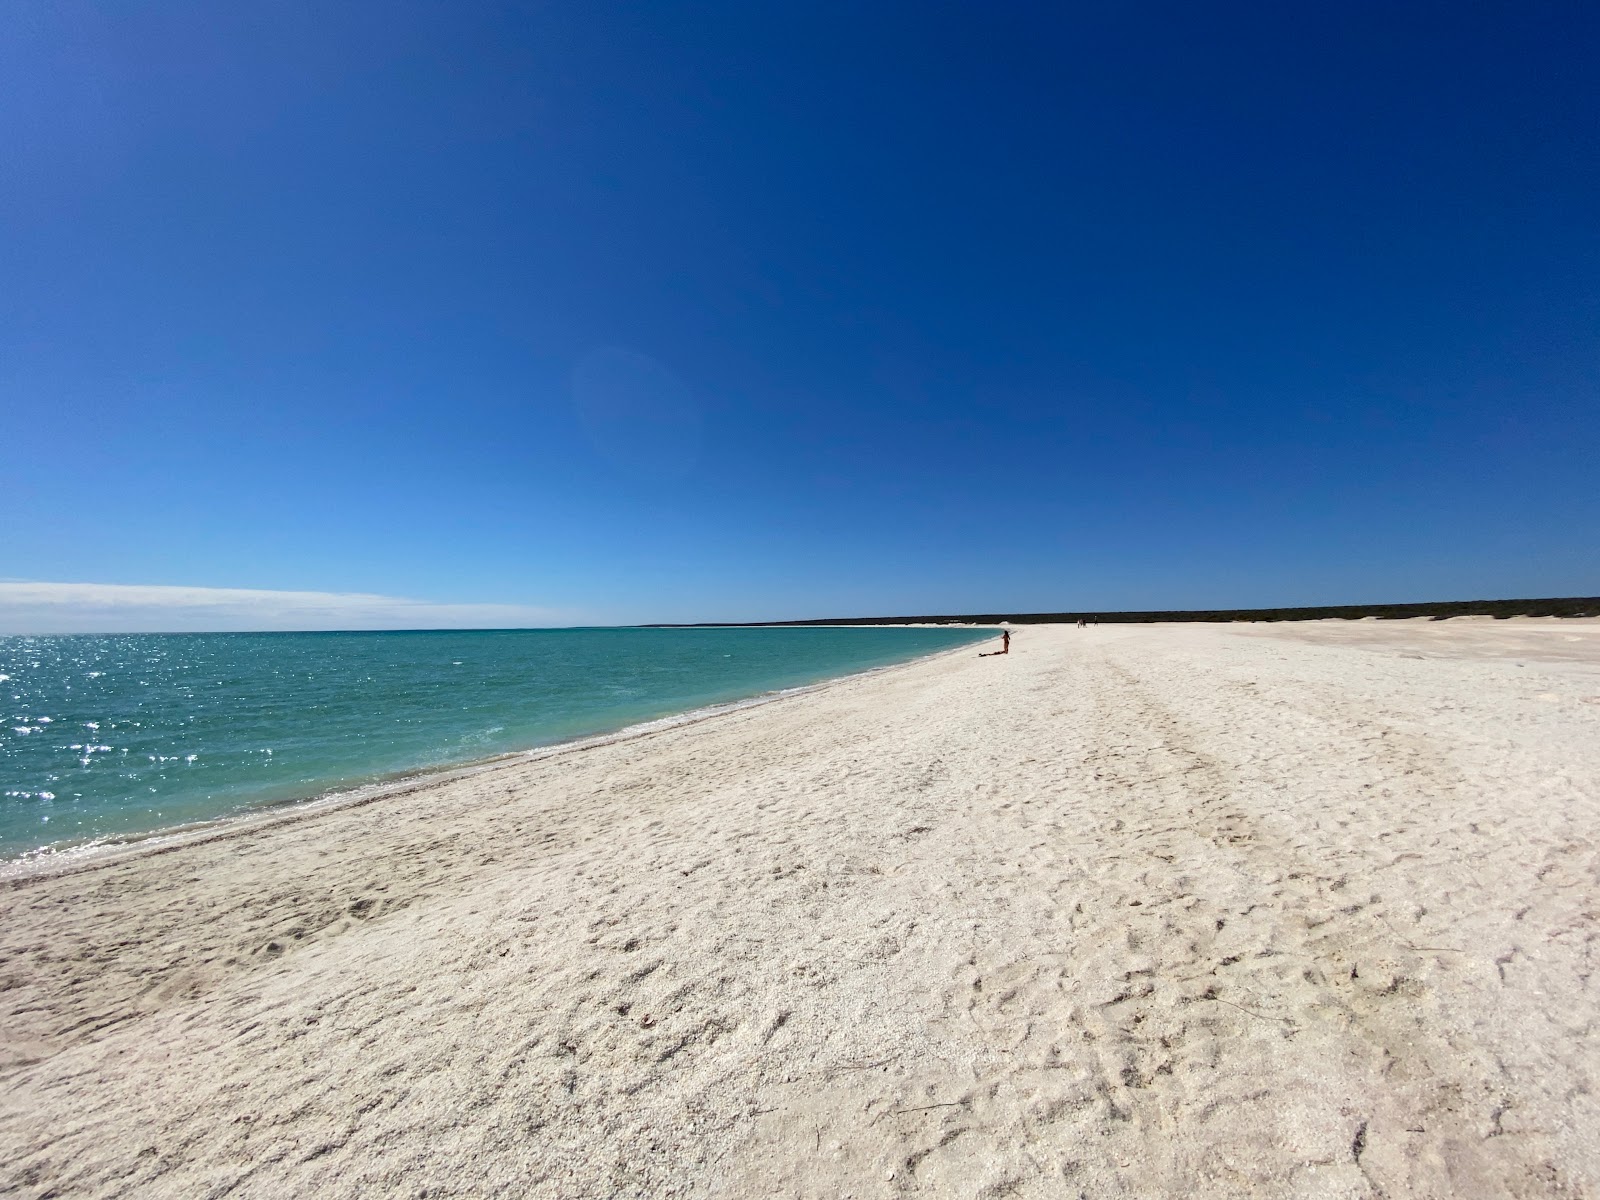 Foto de Shell Beach com areia branca superfície